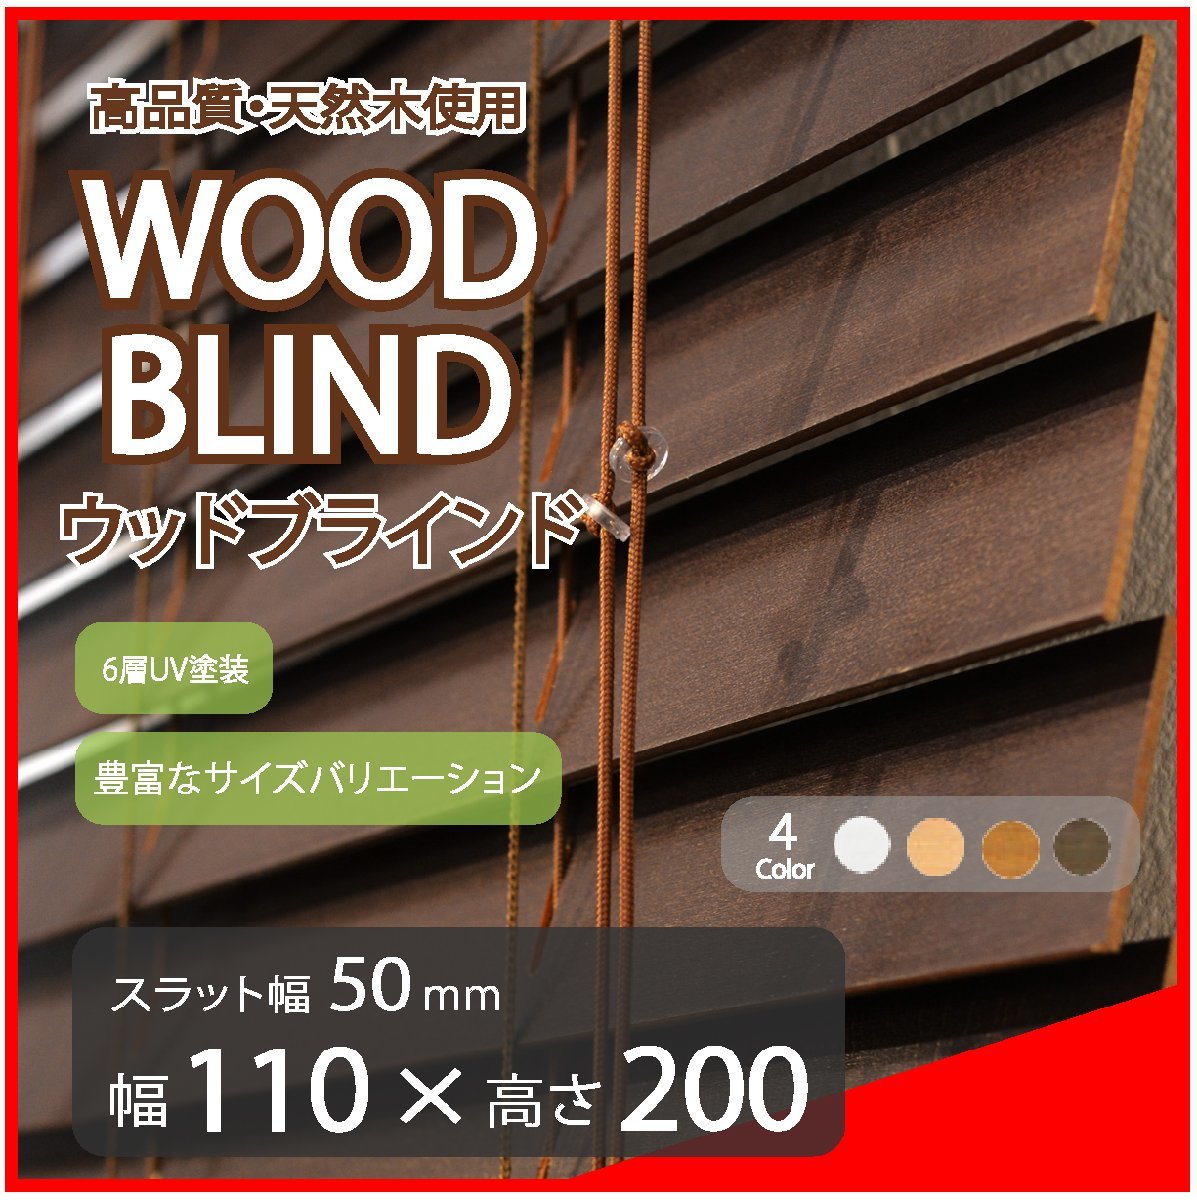 高品質 ウッドブラインド 木製 ブラインド 既成サイズ スラット(羽根)幅50mm 幅110cm×高さ200cm ダーク